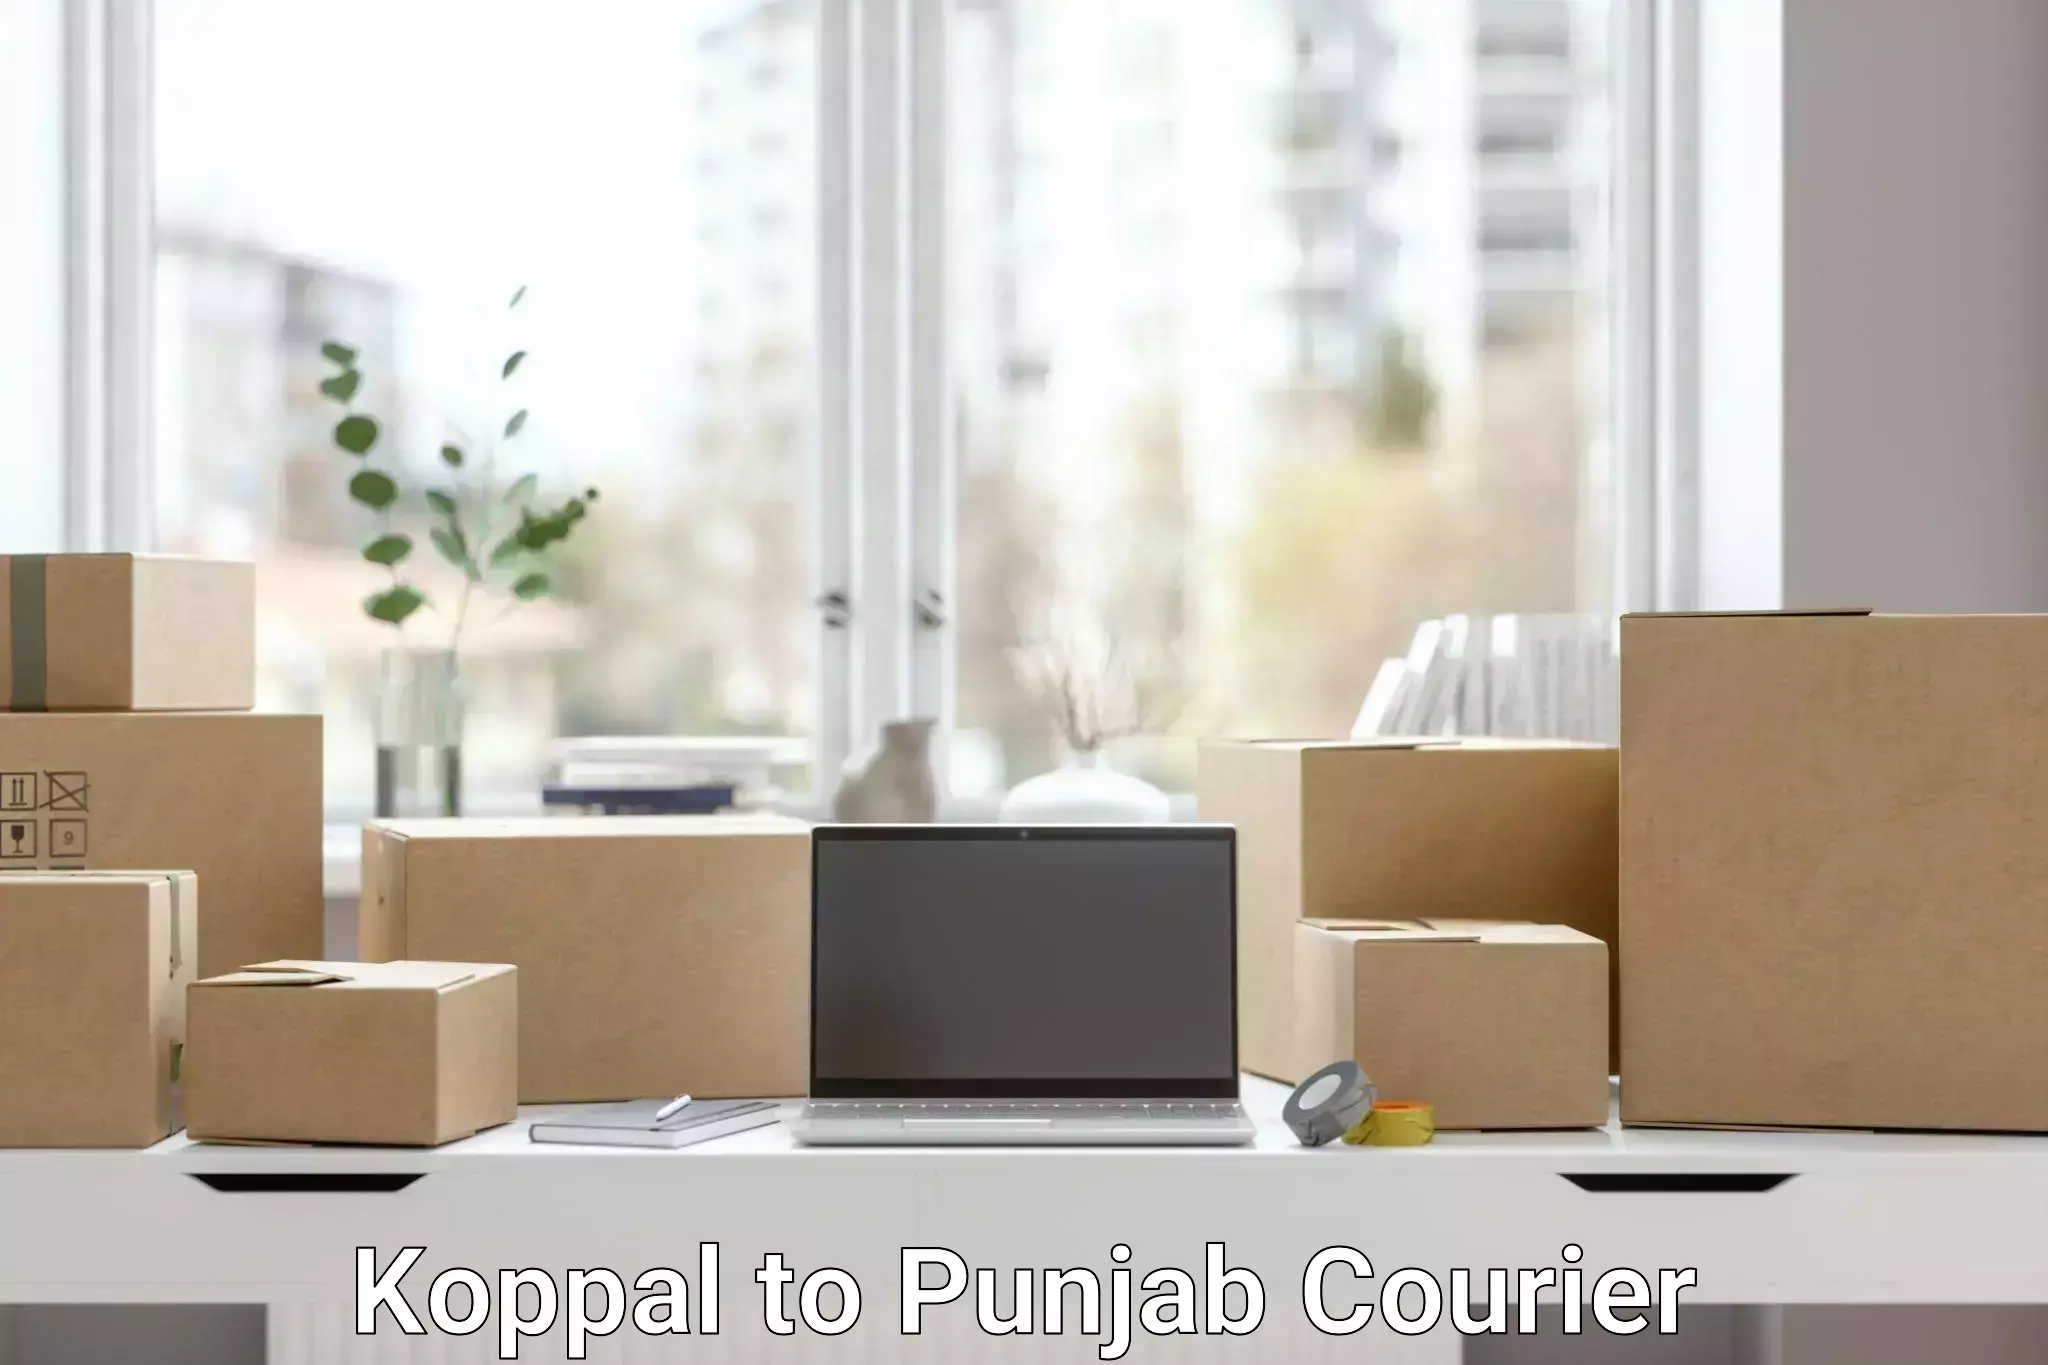 Courier app Koppal to Punjab